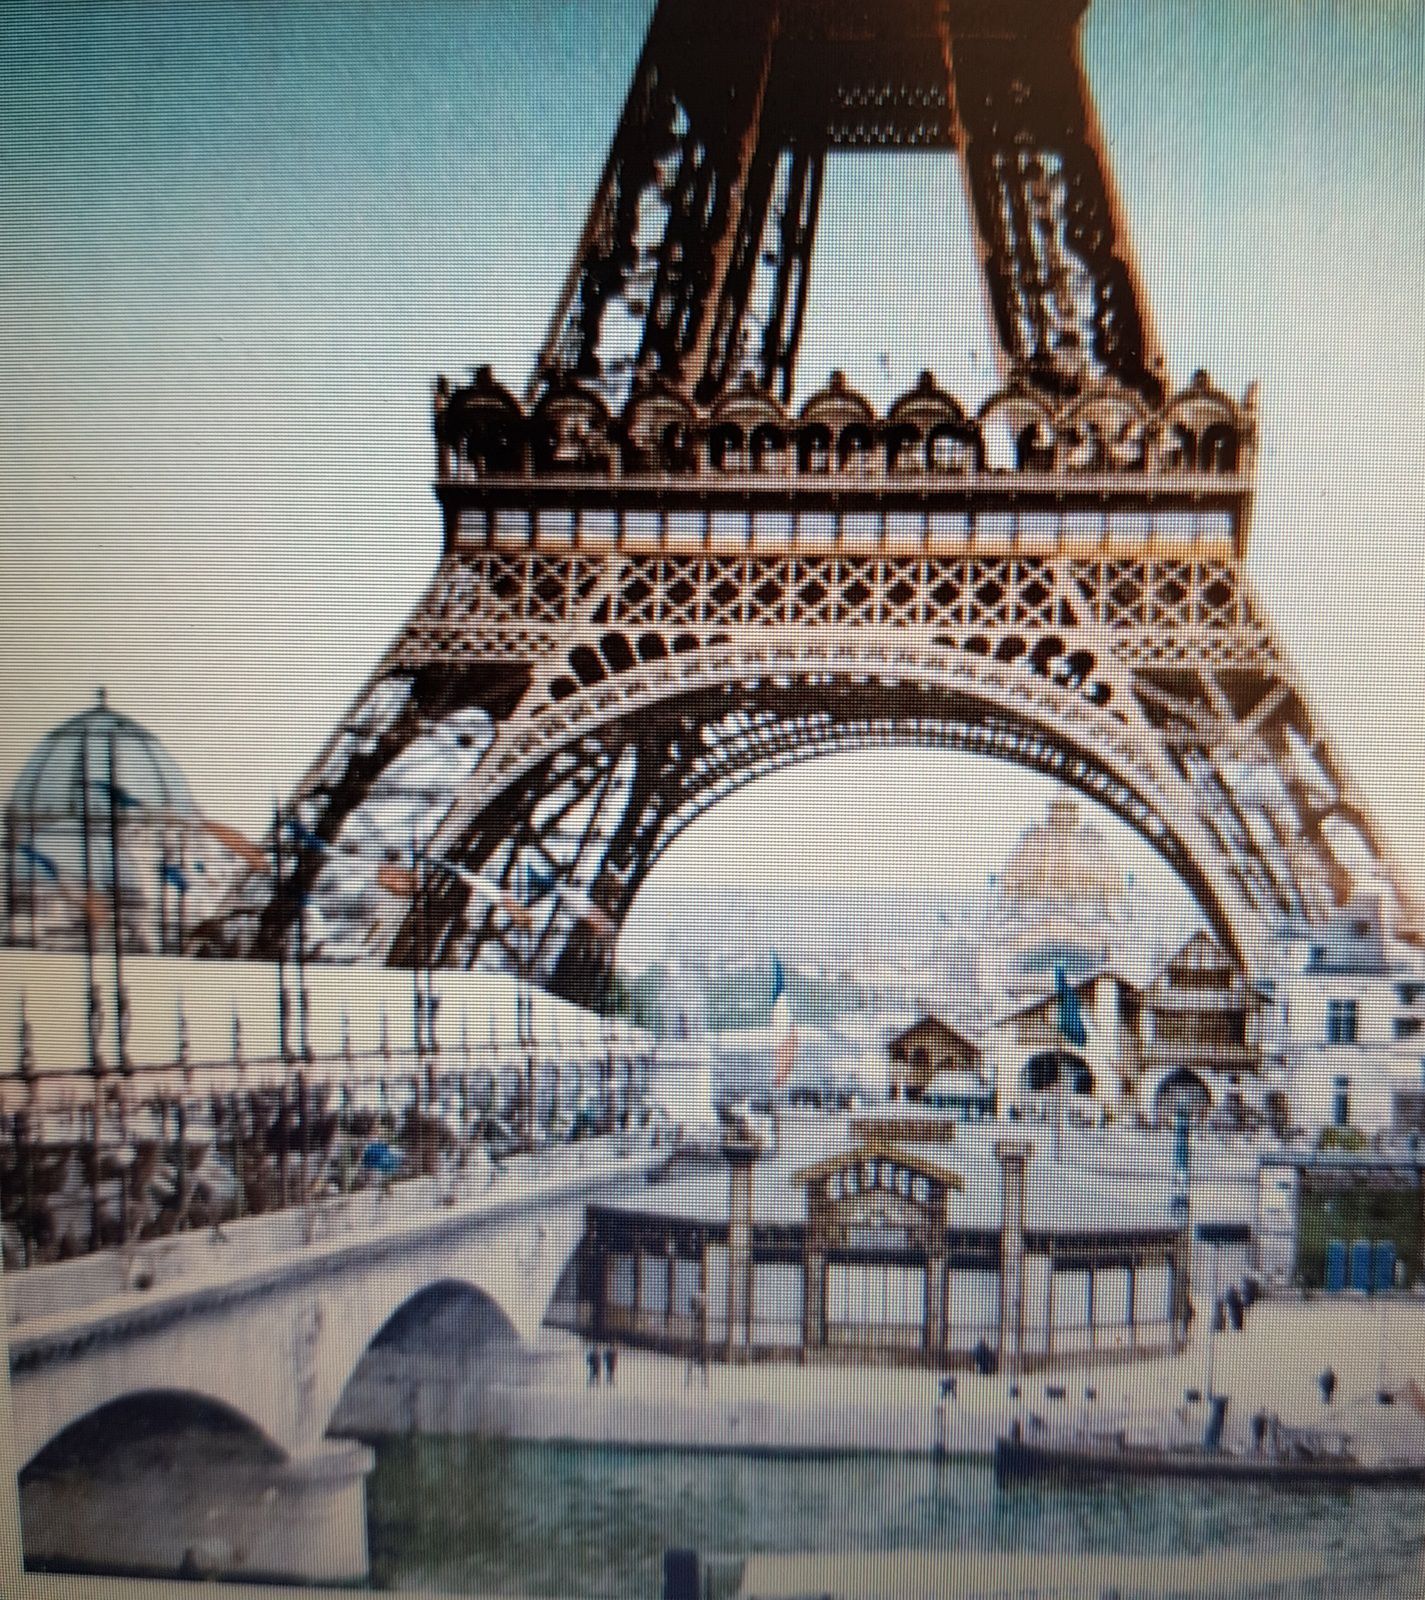 La Tour Eiffel et ses 130 ans (1889-2019) Bon anniversaire à Notre Dame de Fer !